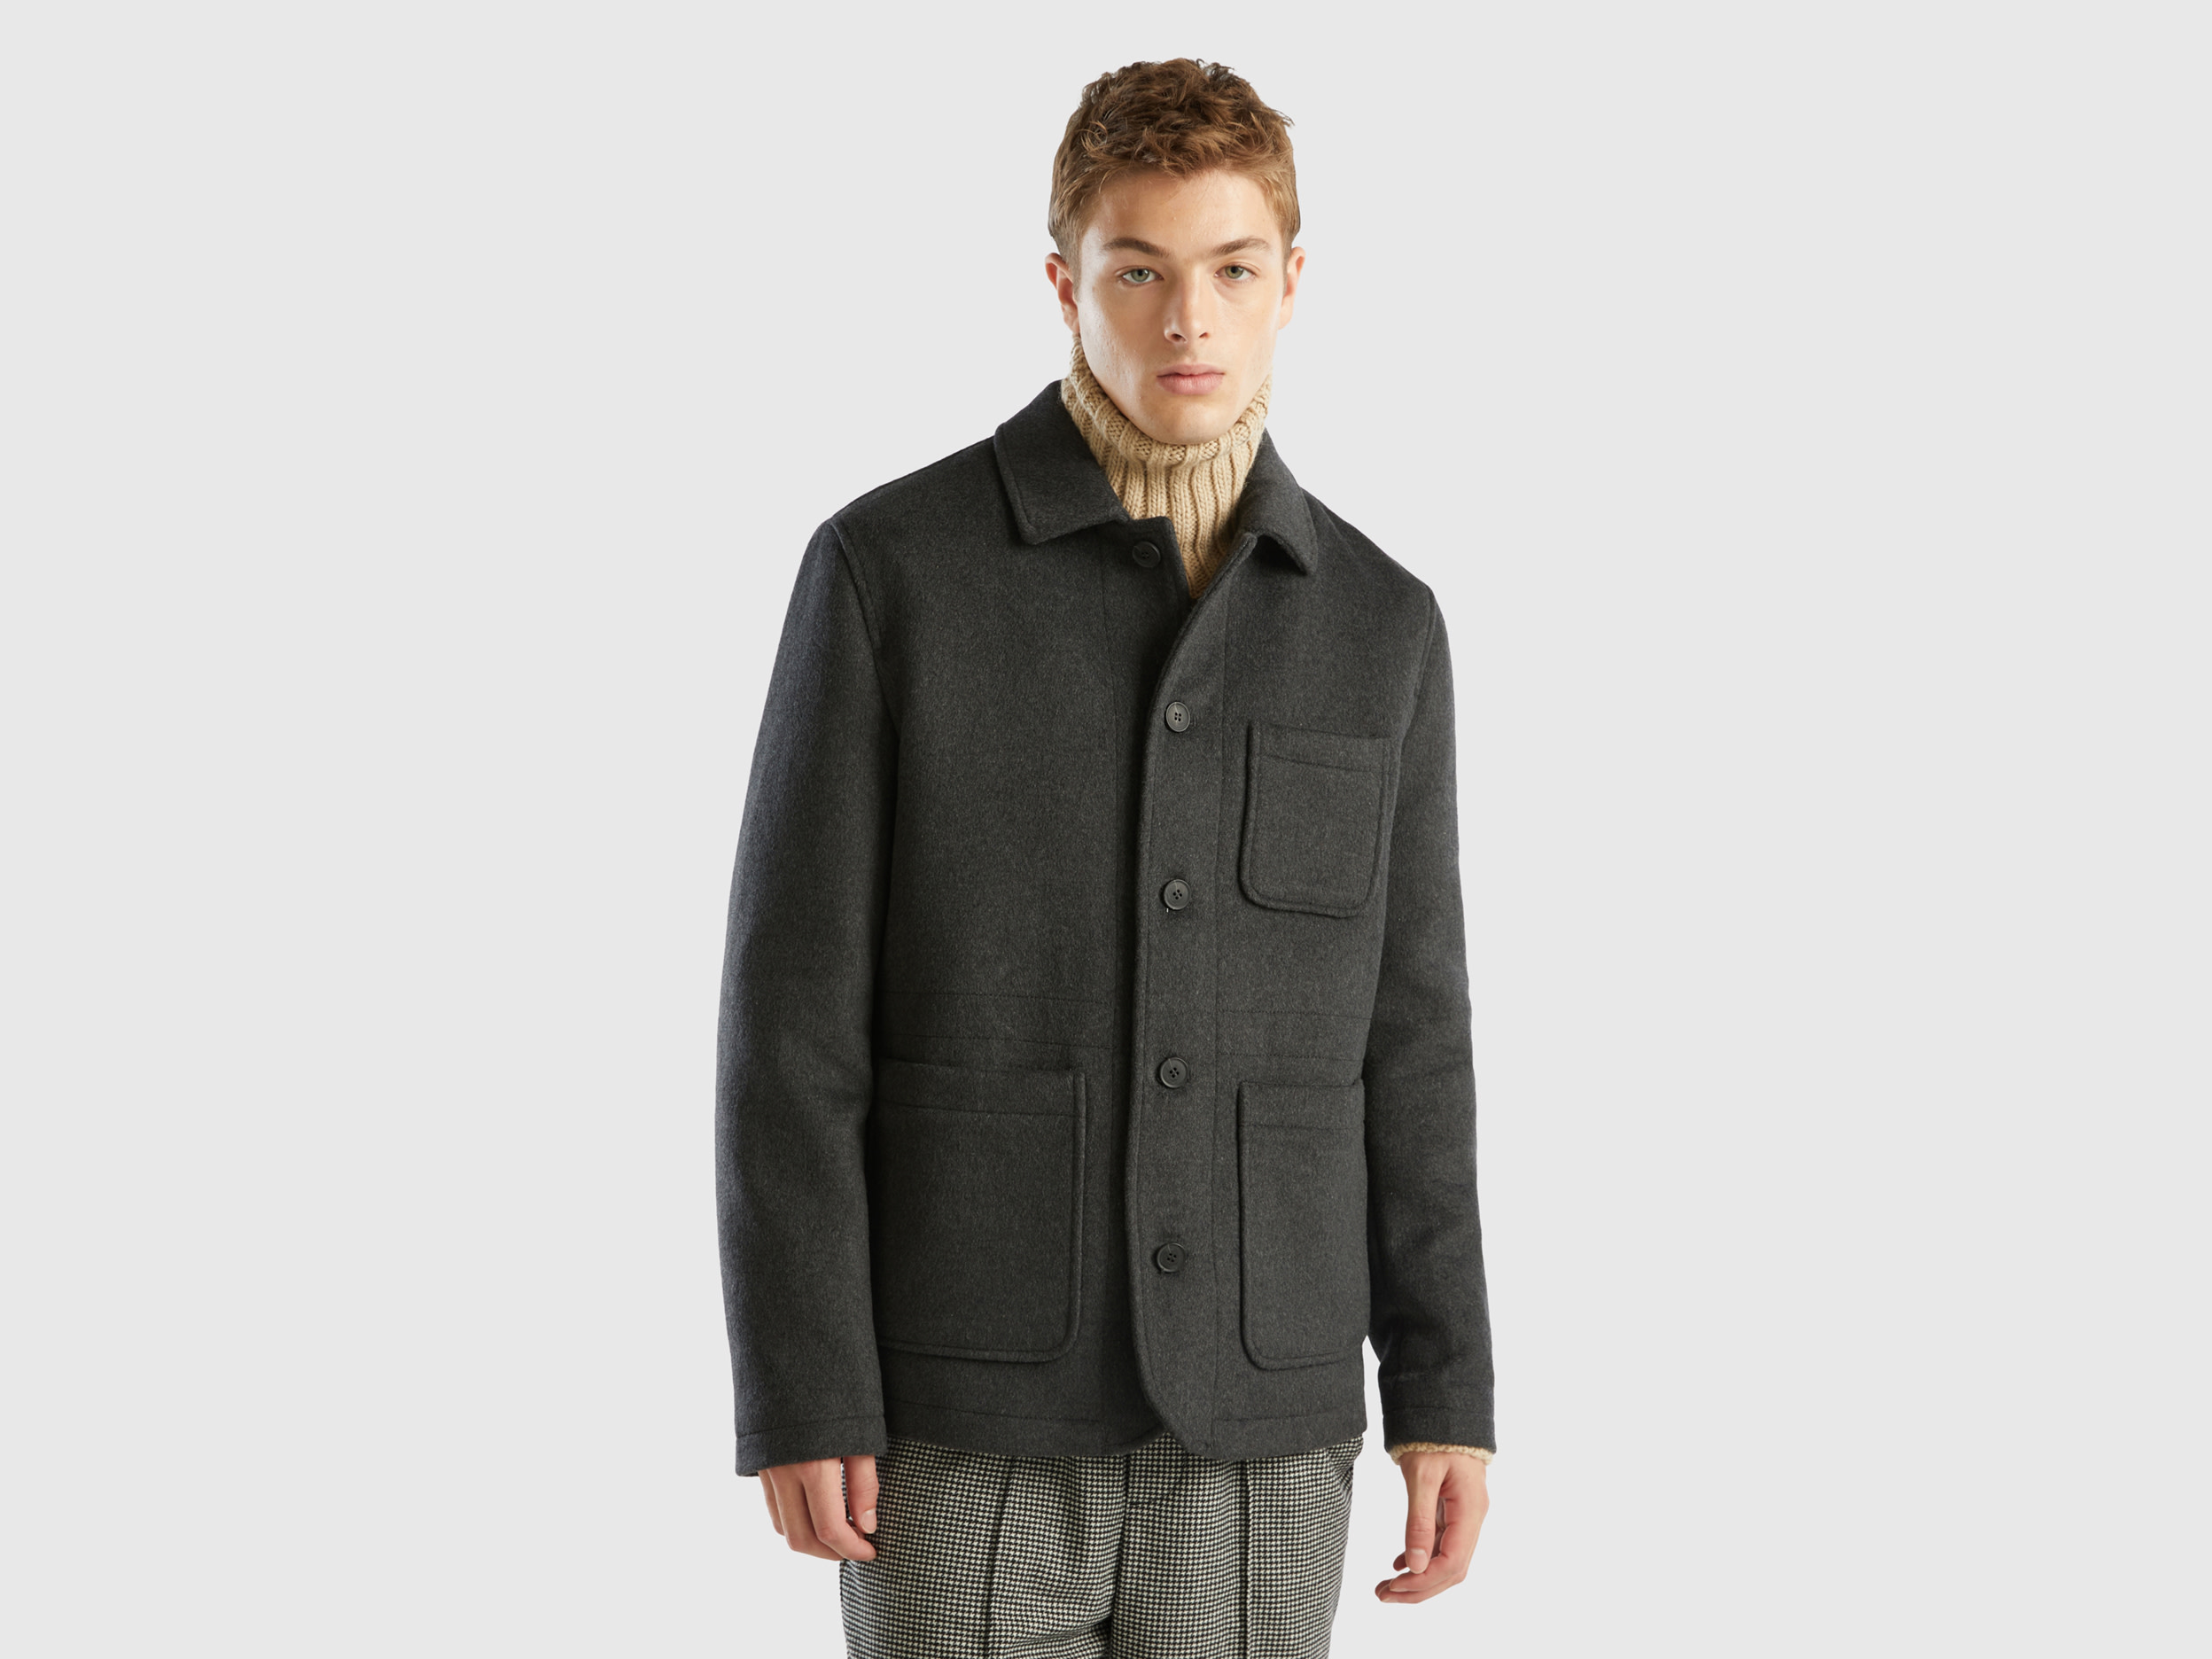 Benetton, Jacket In Woolen Cloth With Pockets, size XL, Dark Gray, Men